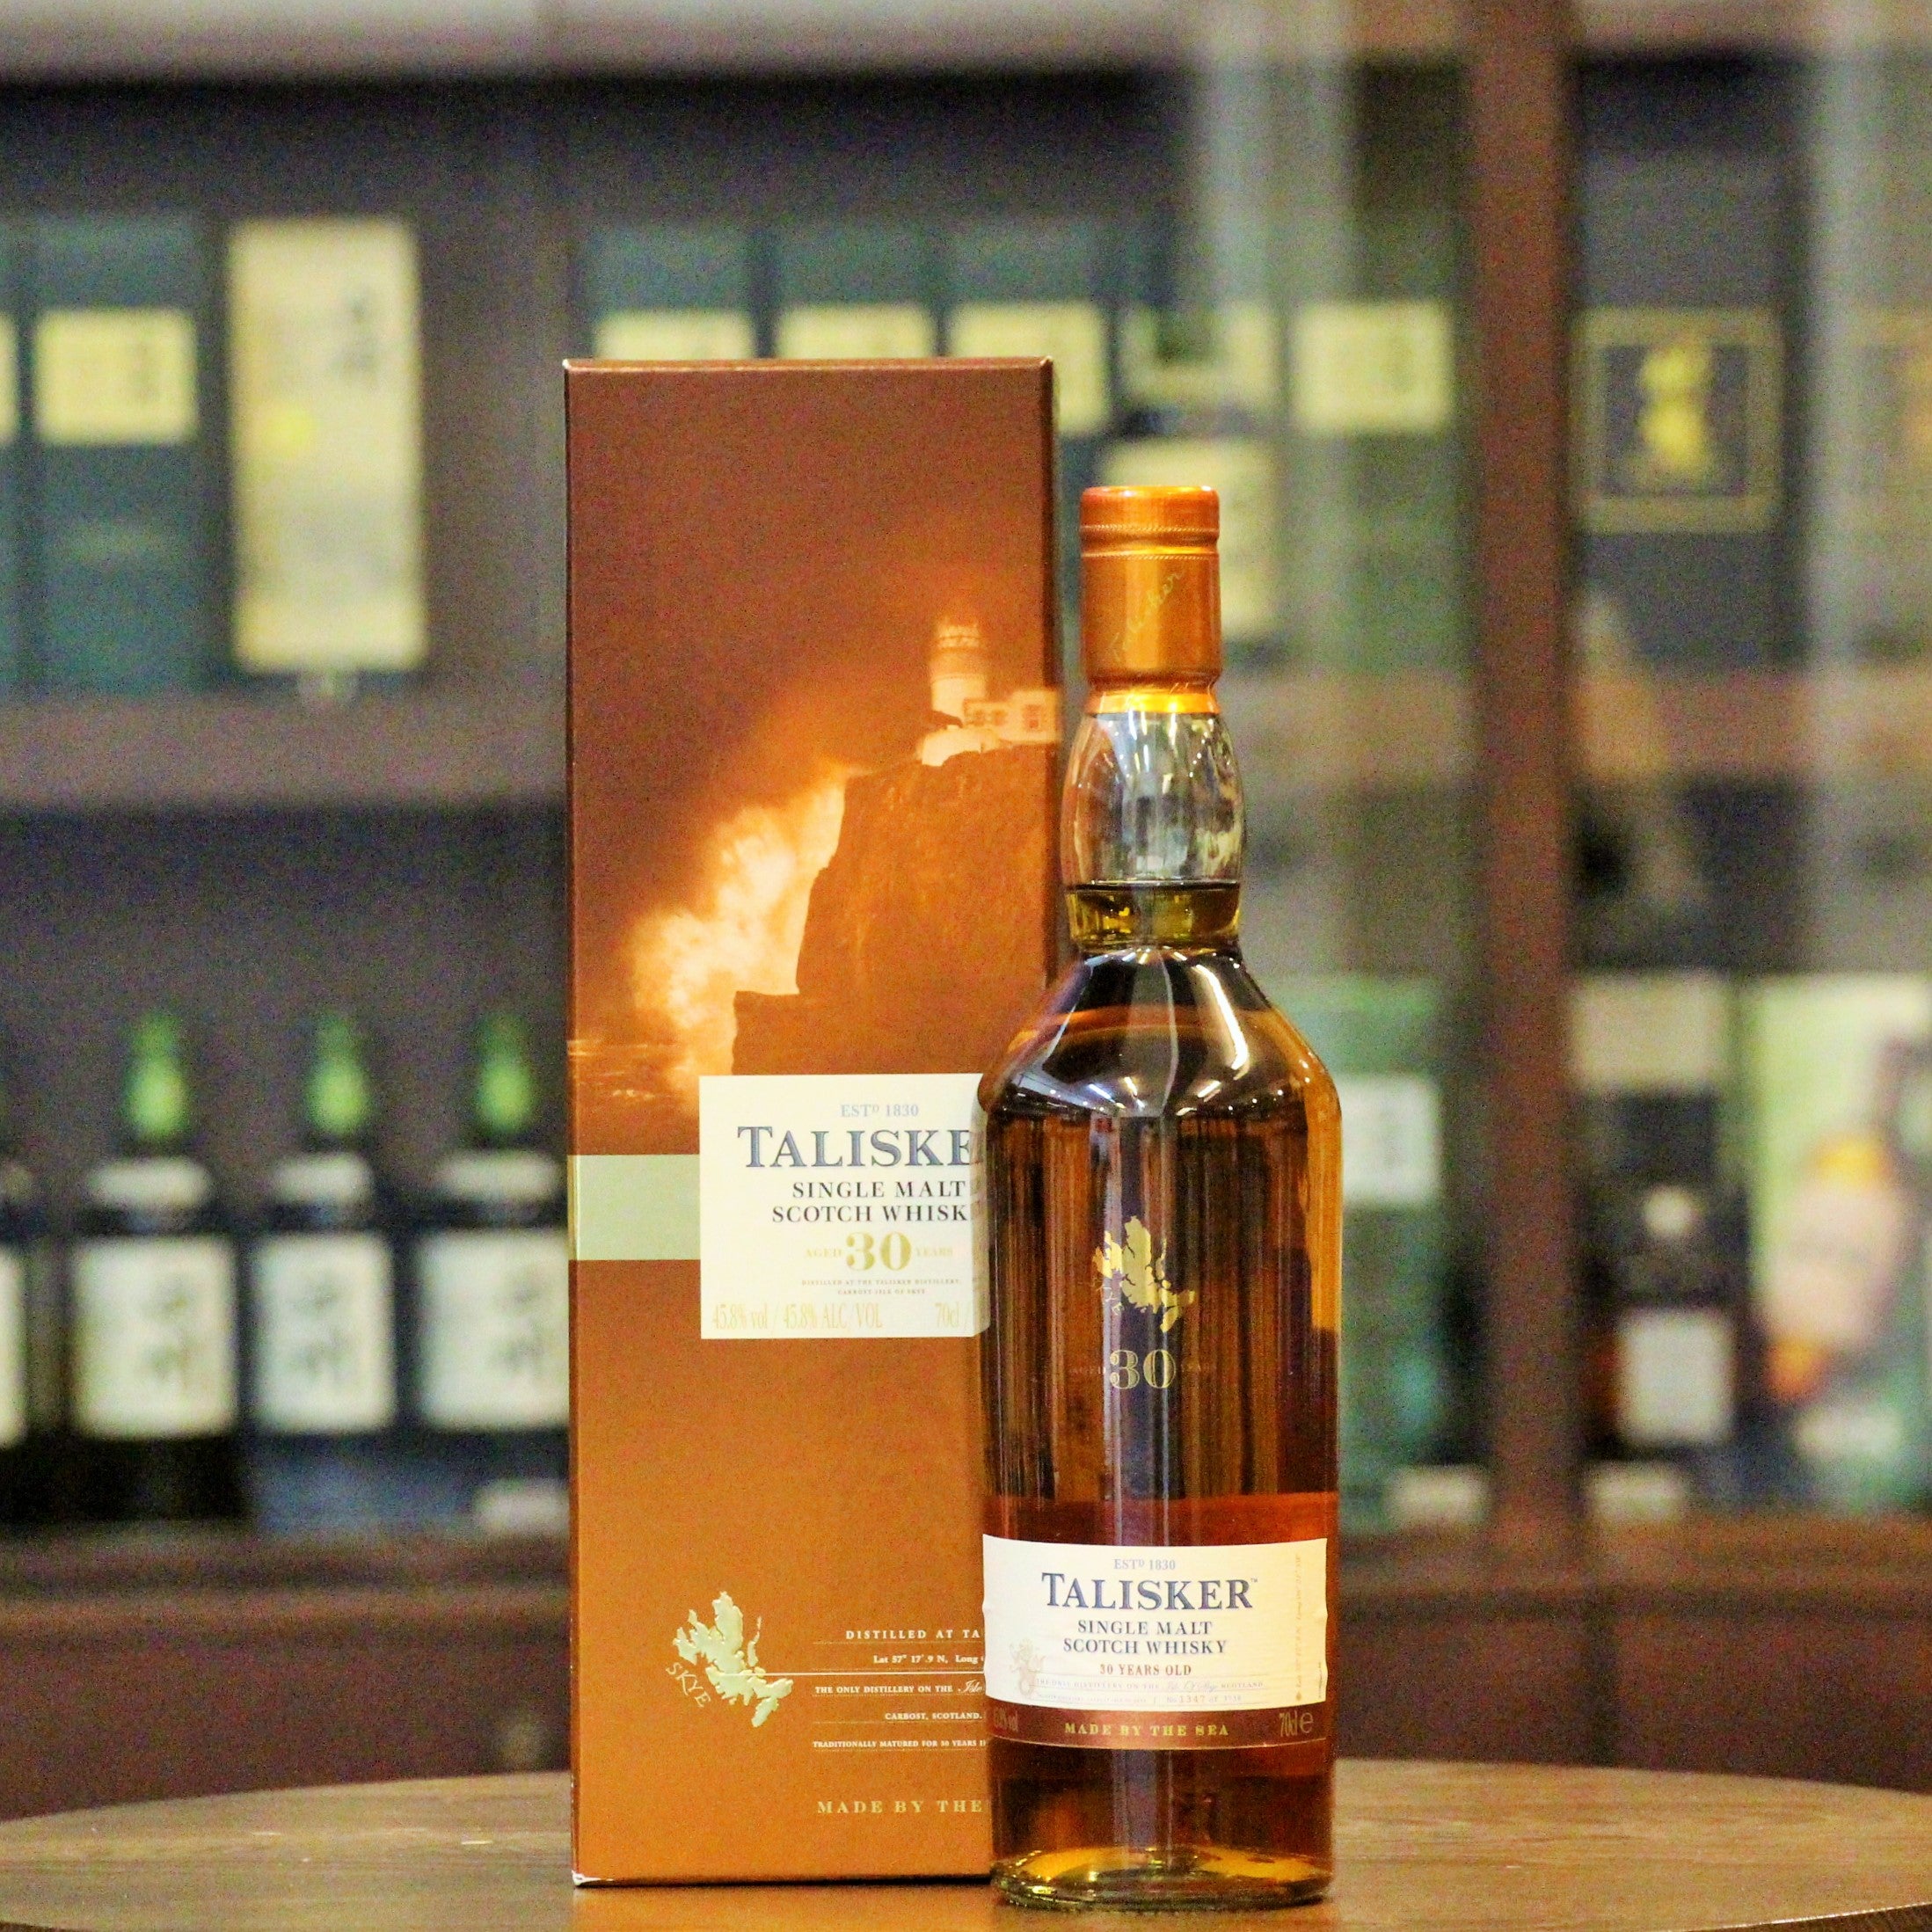 Talisker 30 Year Old 2013 Release Scotch Single Malt Whisky